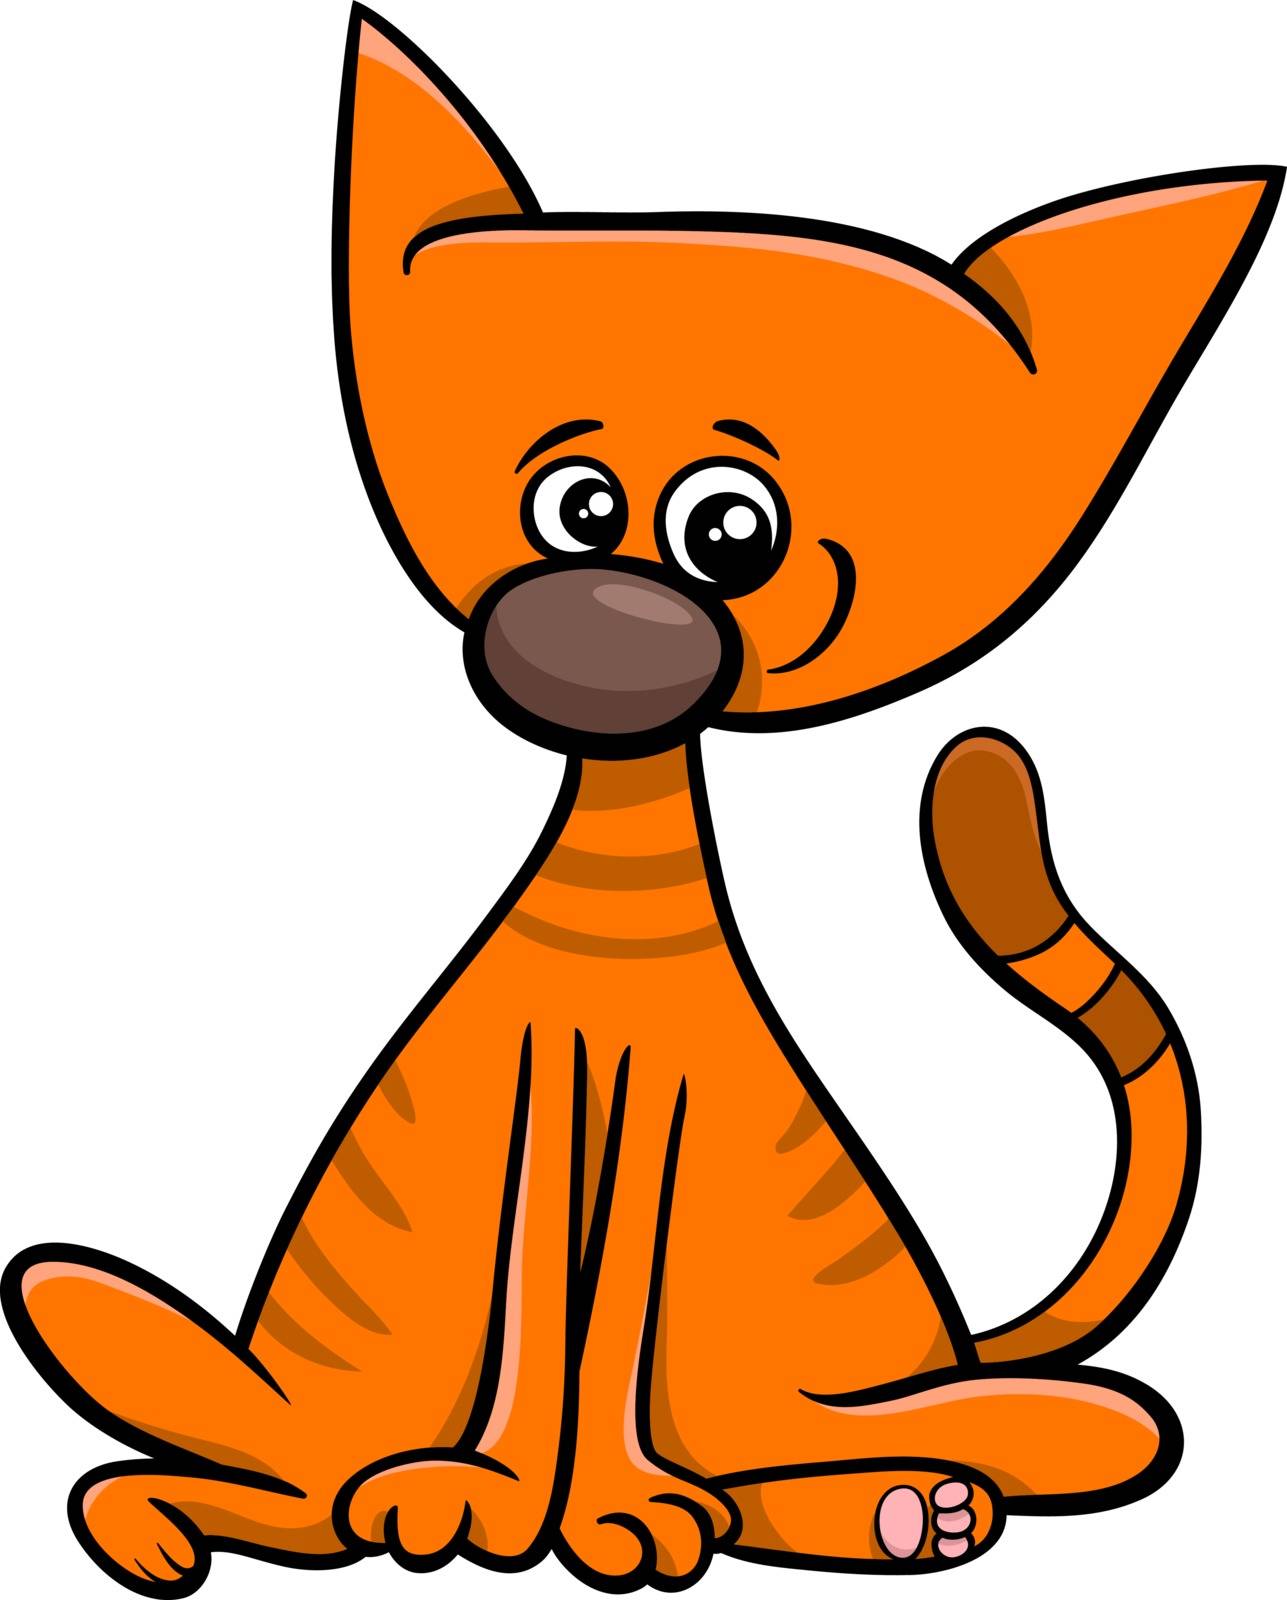 kitten cartoon character by izakowski